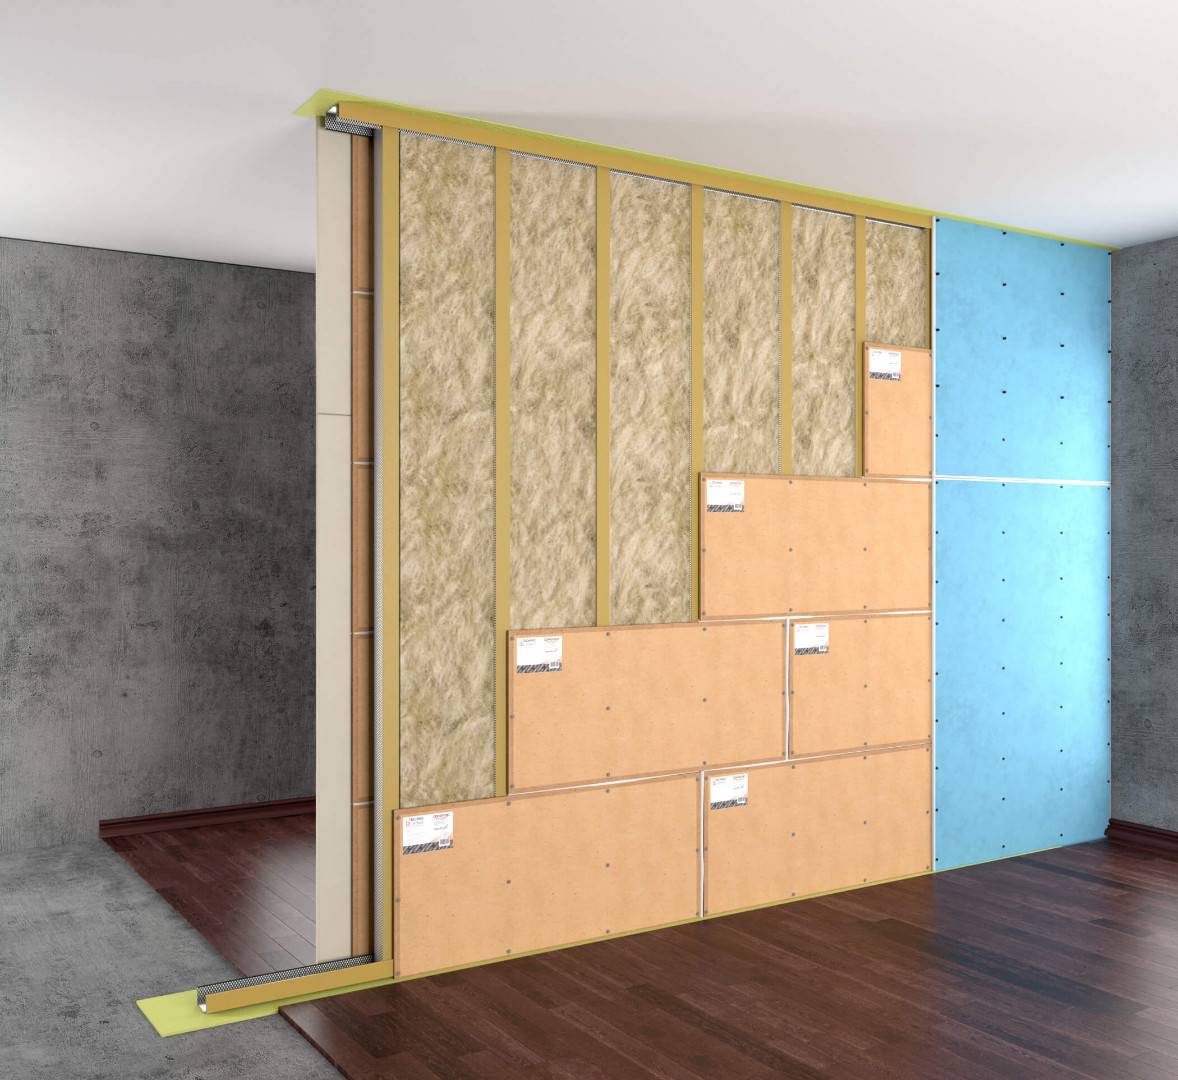 Шумоизоляция стен в квартиире: современные материалы